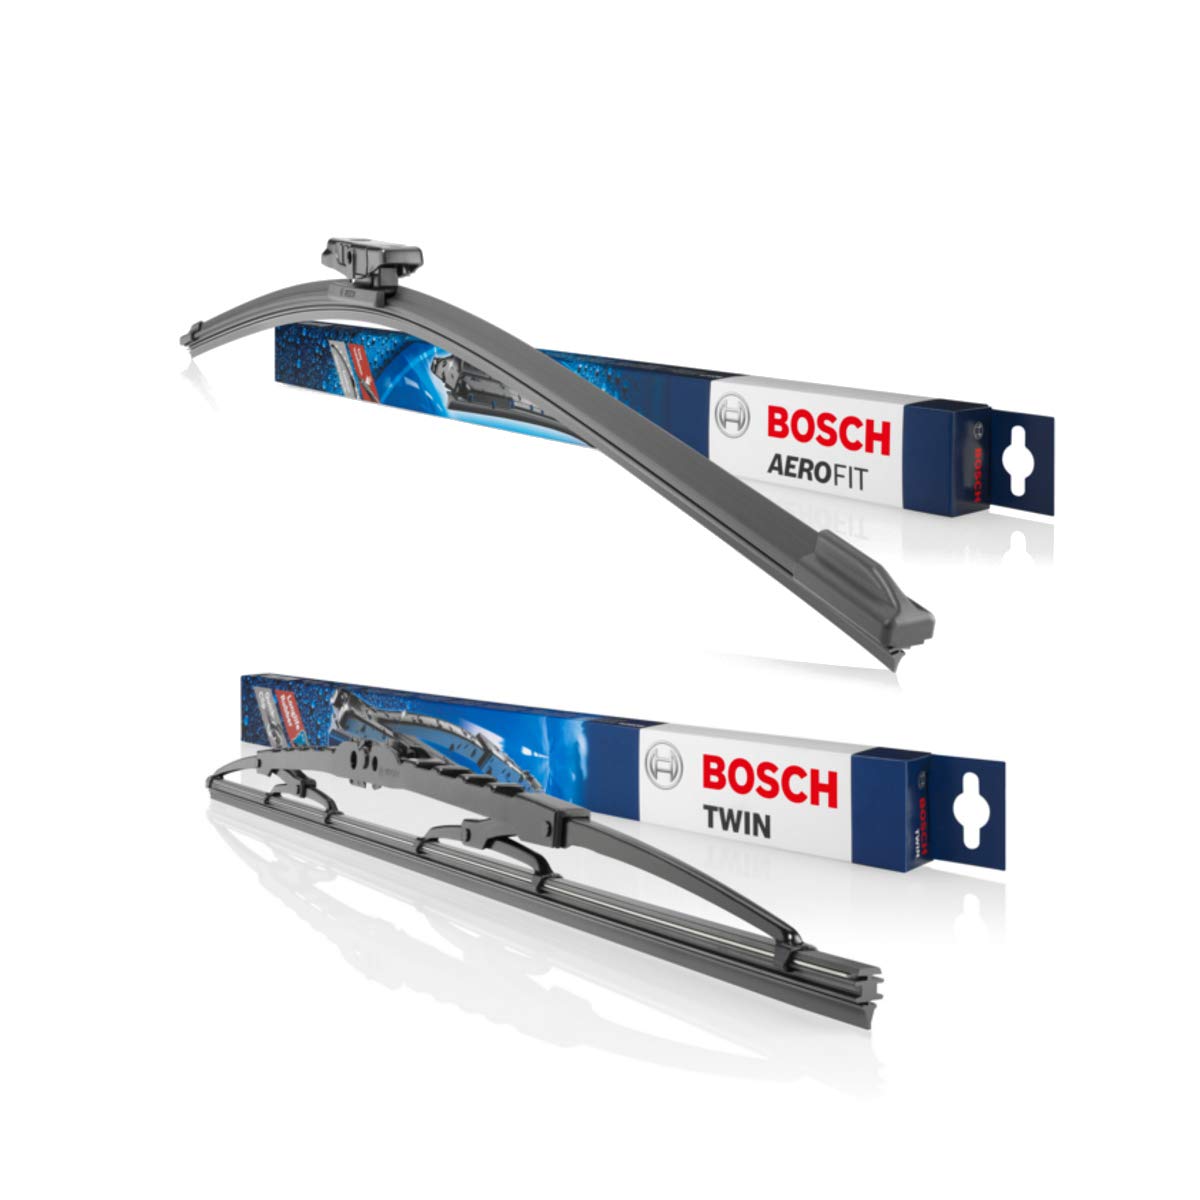 Original Bosch Aerotwin Retrofit Scheibenwischer Wischblätter Set Vorne + Hinten Komplettsatz